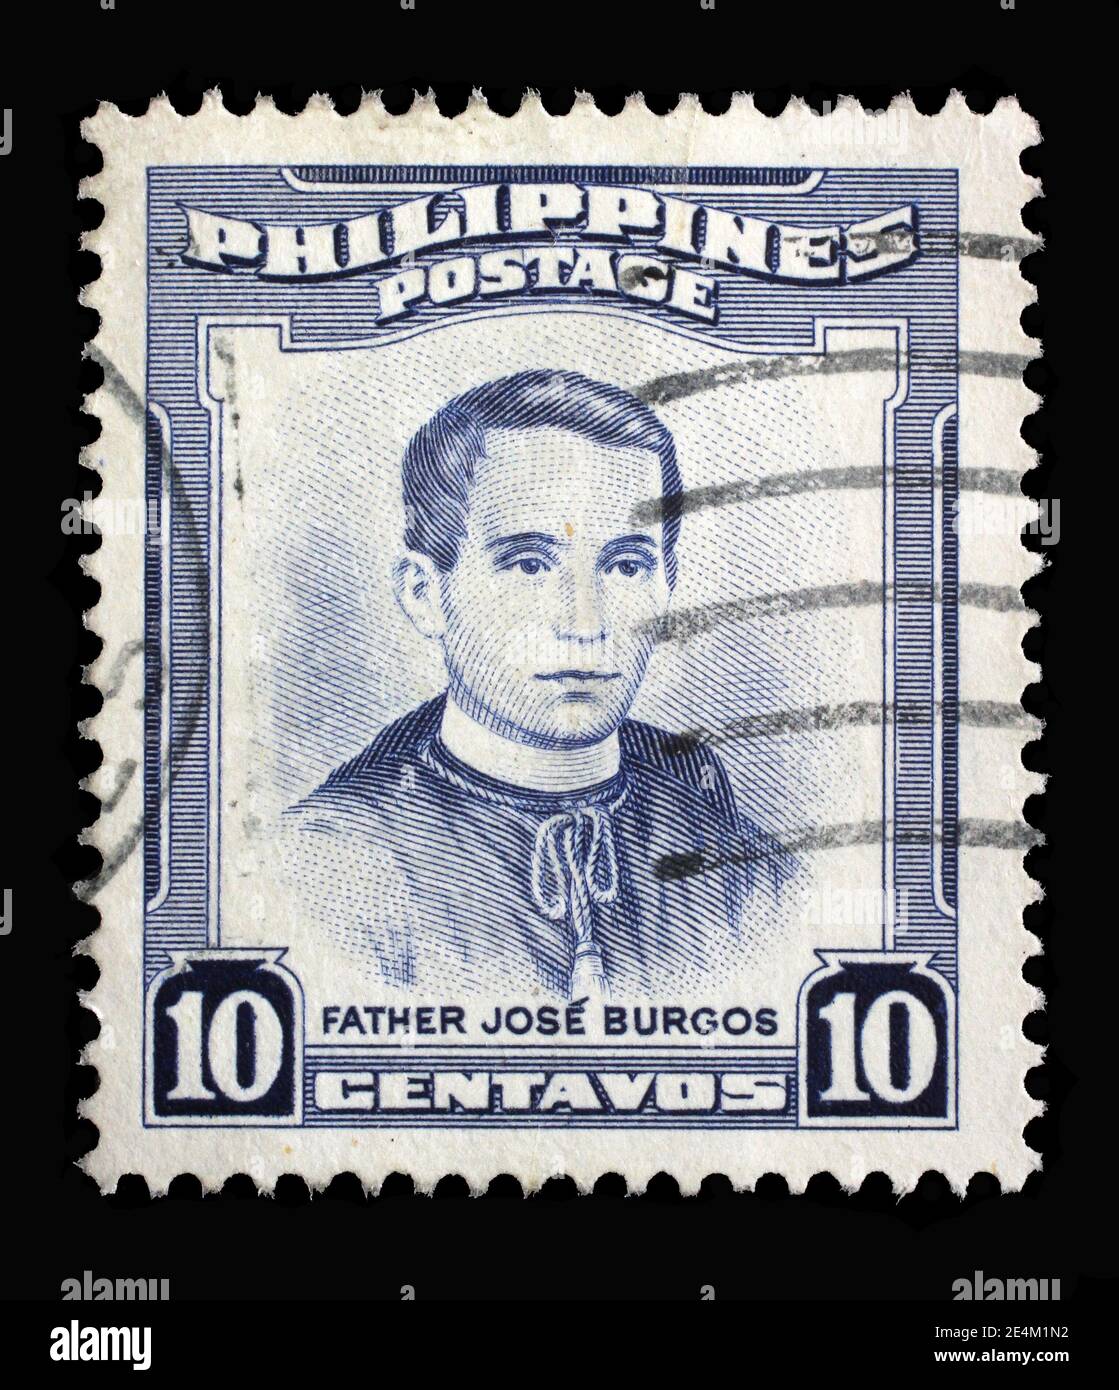 Briefmarke gedruckt auf den Philippinen zeigt Porträt von Jose Burgos (1837-1872) Priester und Philosoph, Personalities Serie, um 1955 Stockfoto